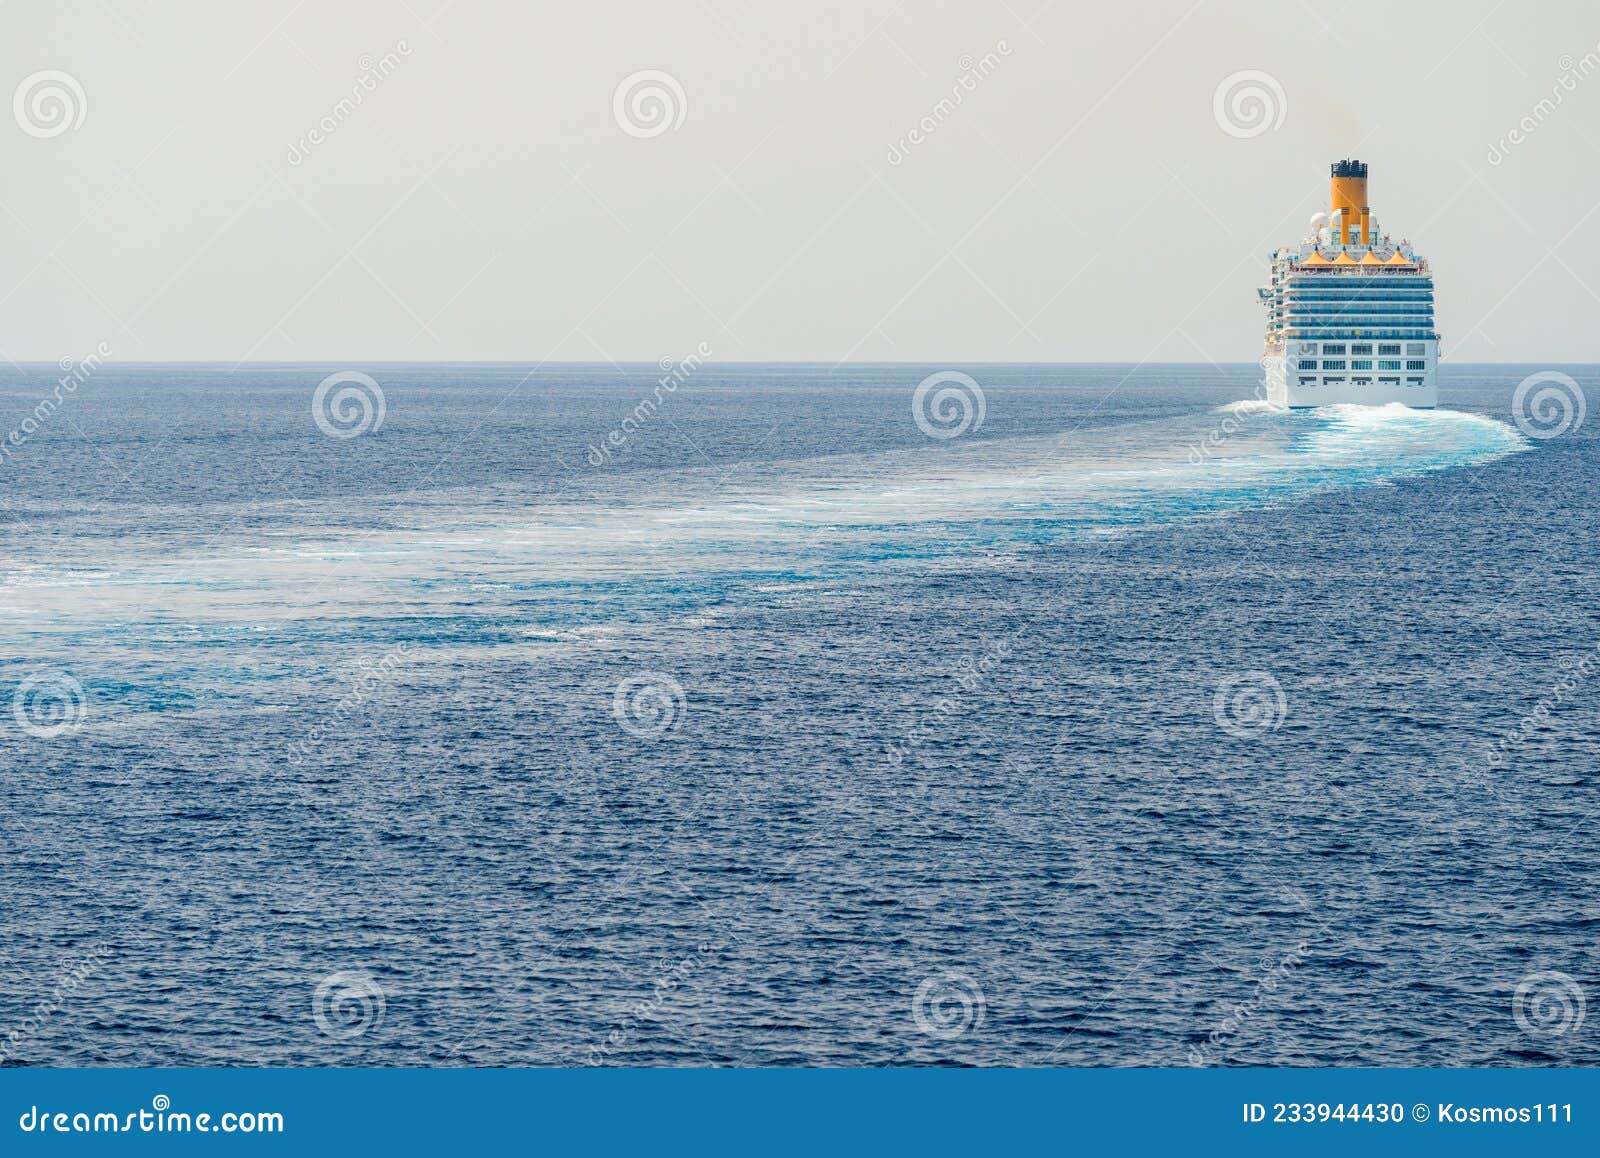 big cruise ship in the sea